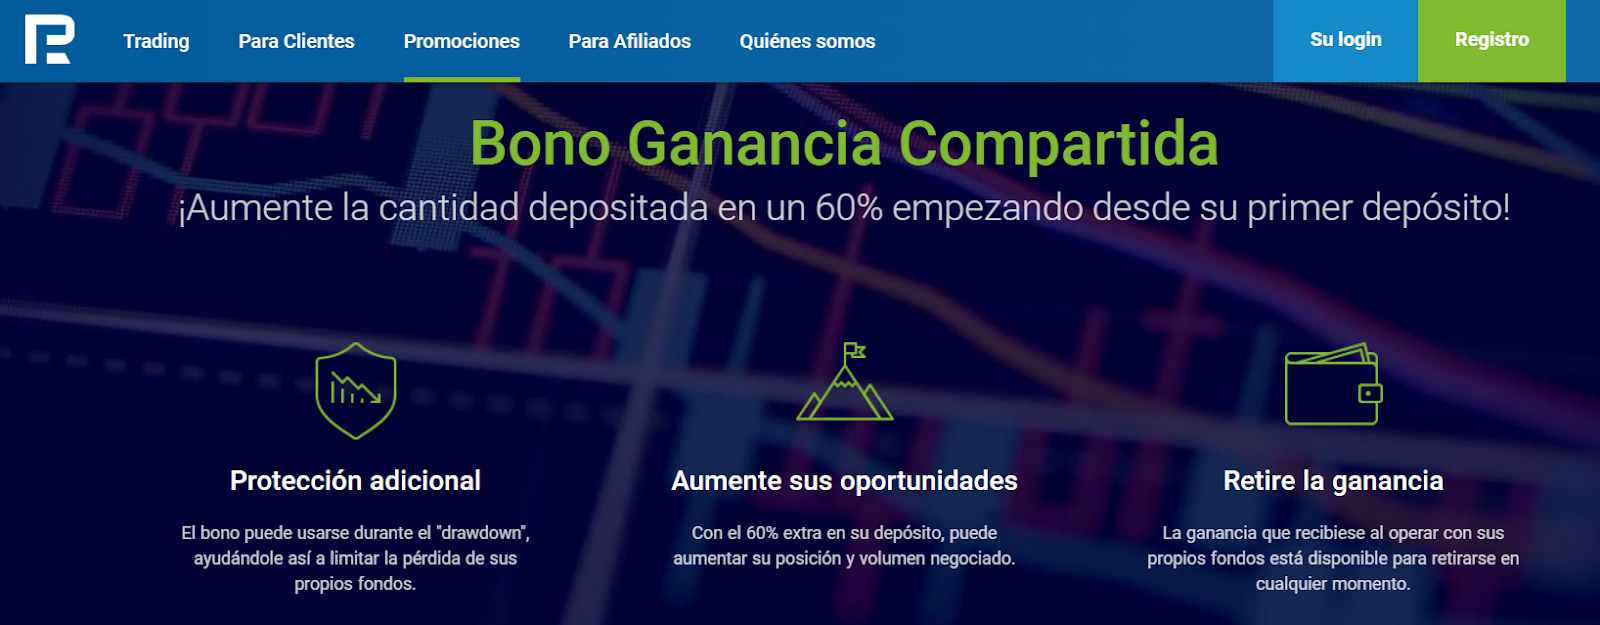 Bono de participación en las ganancias en la página de RoboForex